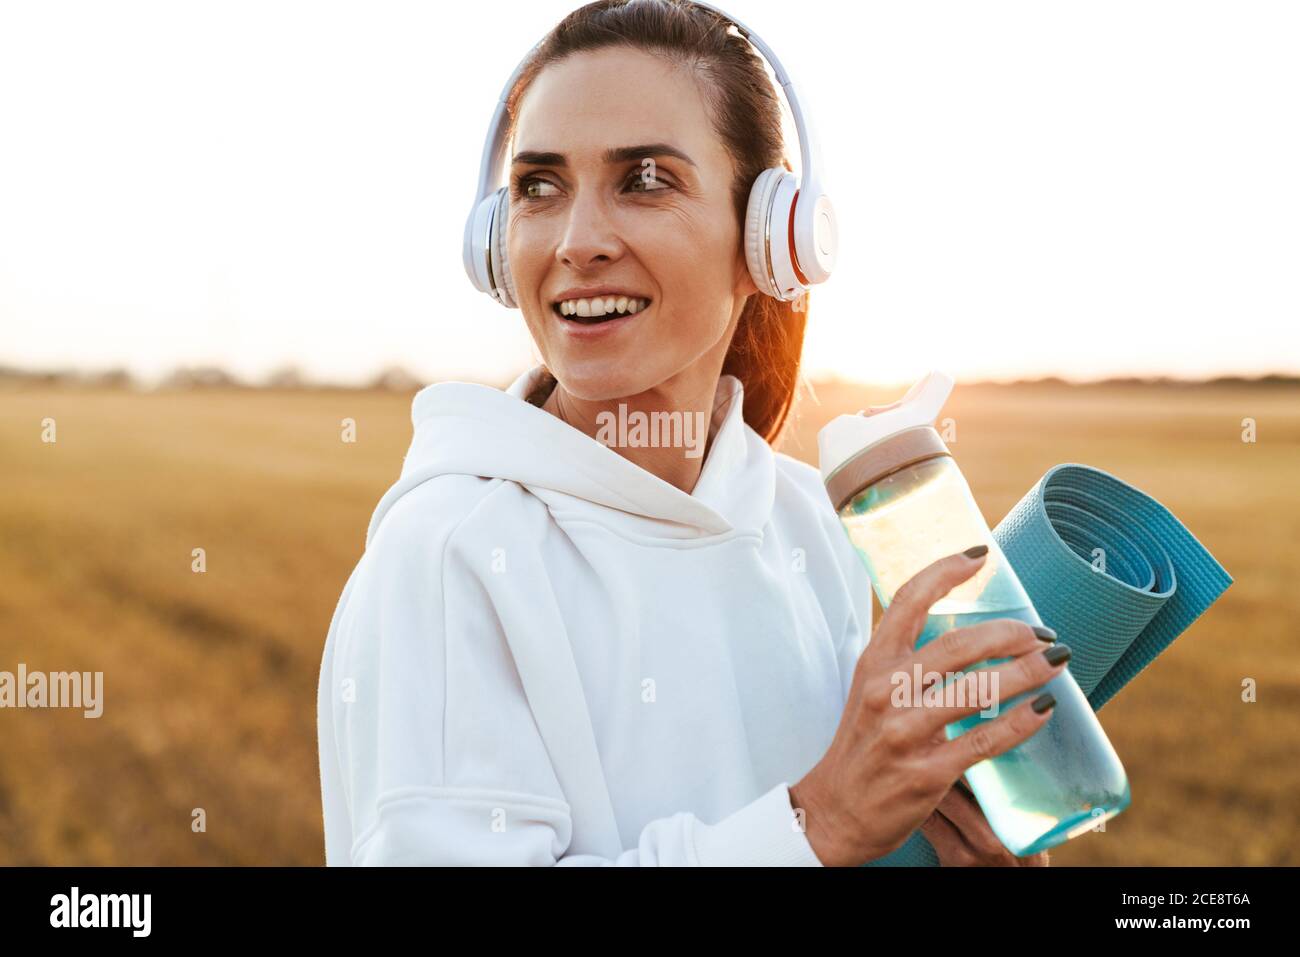 Bild von lächelnd schöne Sportlerin in Kopfhörer Trinkwasser während Yogamatte am goldenen Feld halten Stockfoto